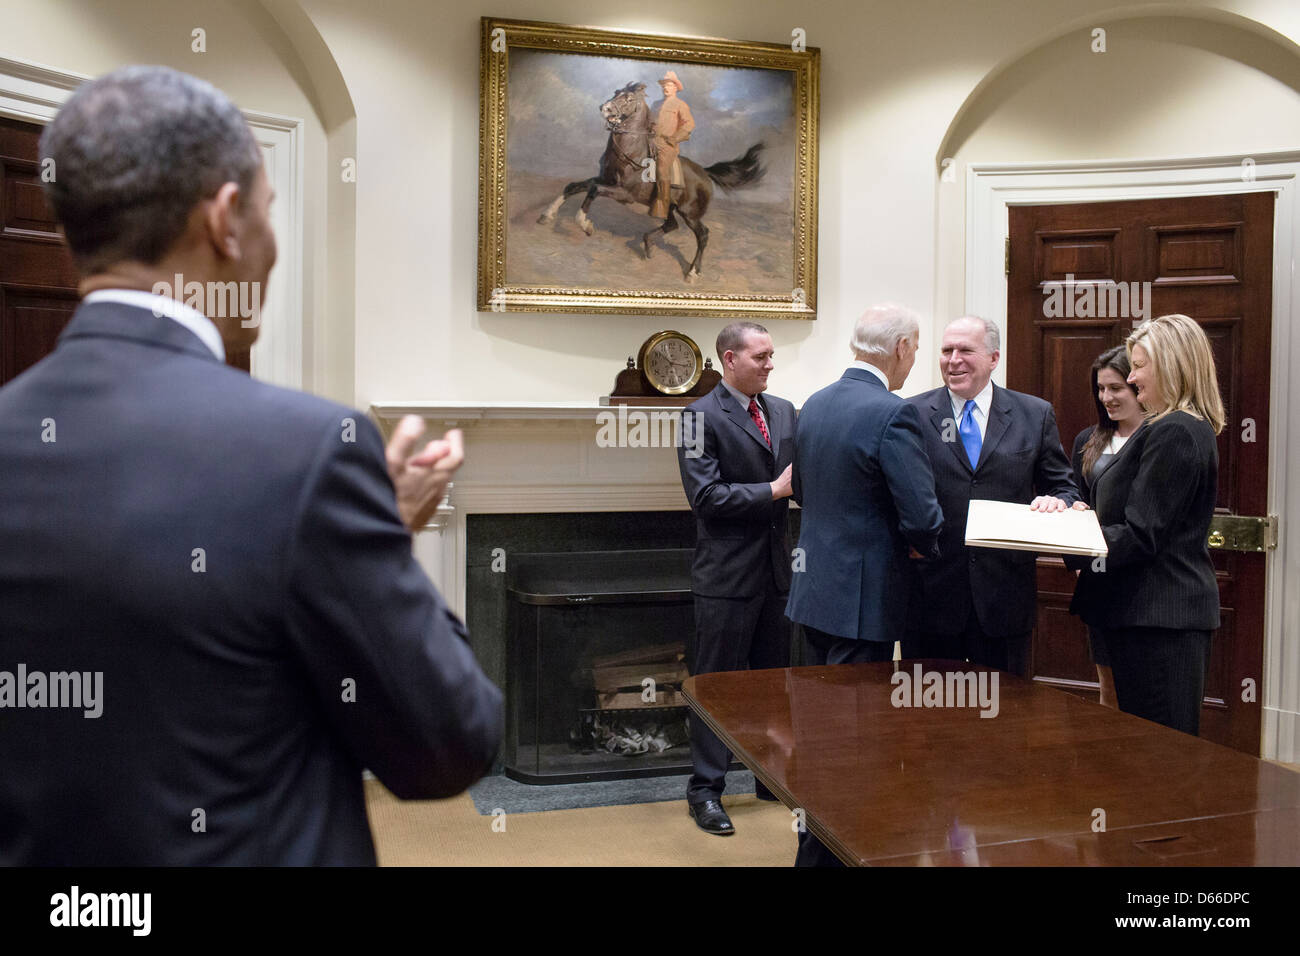 US-Präsident Barack Obama begrüßt als Vize-Präsident Joe Biden schüttelt Hände mit CIA-Direktor John Brennan nach seiner Vereidigung im Roosevelt Room des weißen Hauses 8. März 2013 in Washington, DC. Brennan wurde als neuer Direktor der CIA vereidigt. Stockfoto